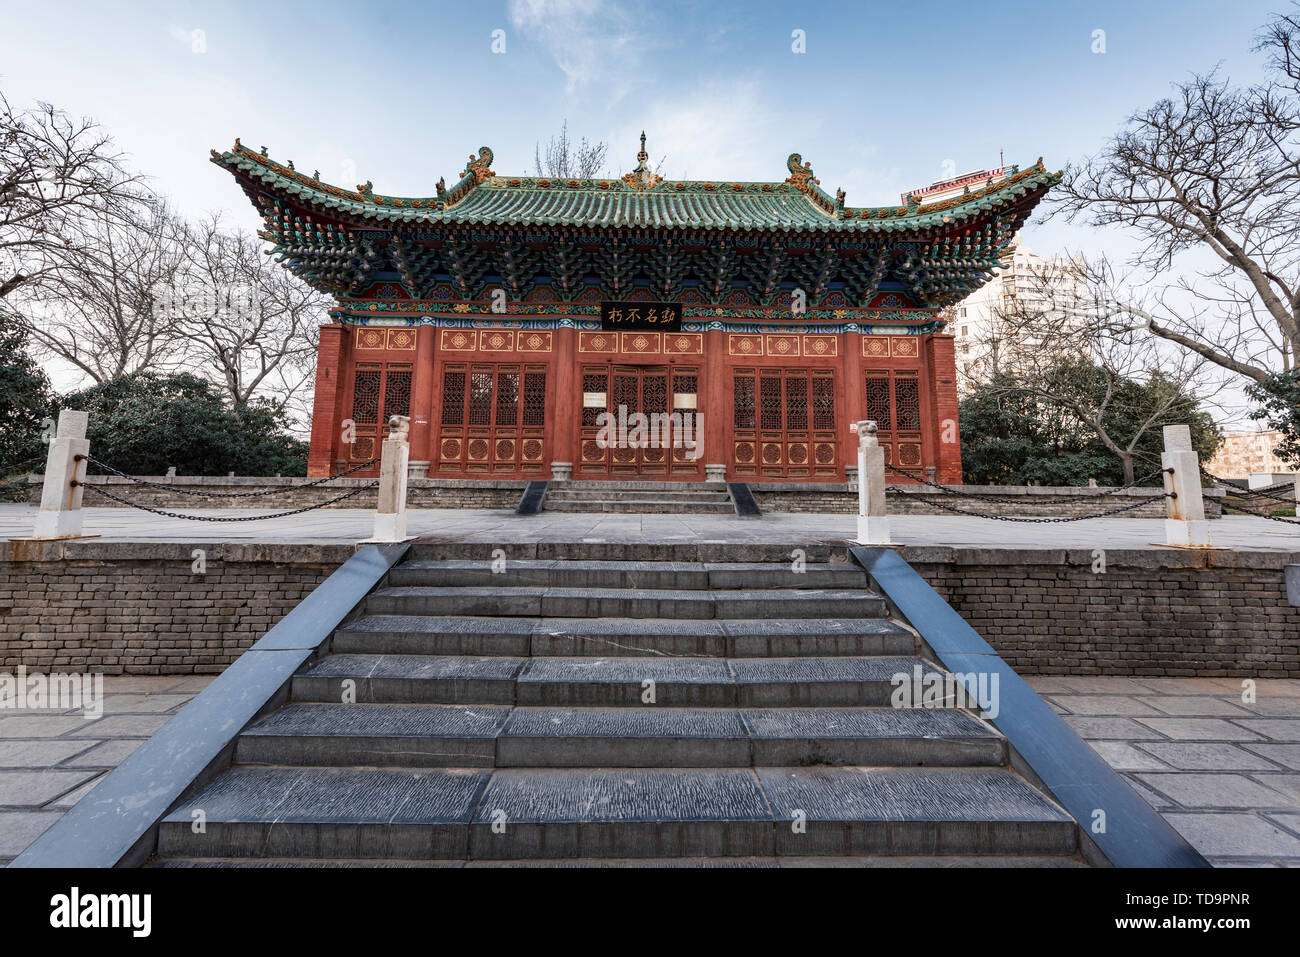 Paisajes arquitectónicos clásicos como Hu Gong Temple, Gente del Parque, de la ciudad de Zhengzhou, provincia de Henan, en la primavera Foto de stock